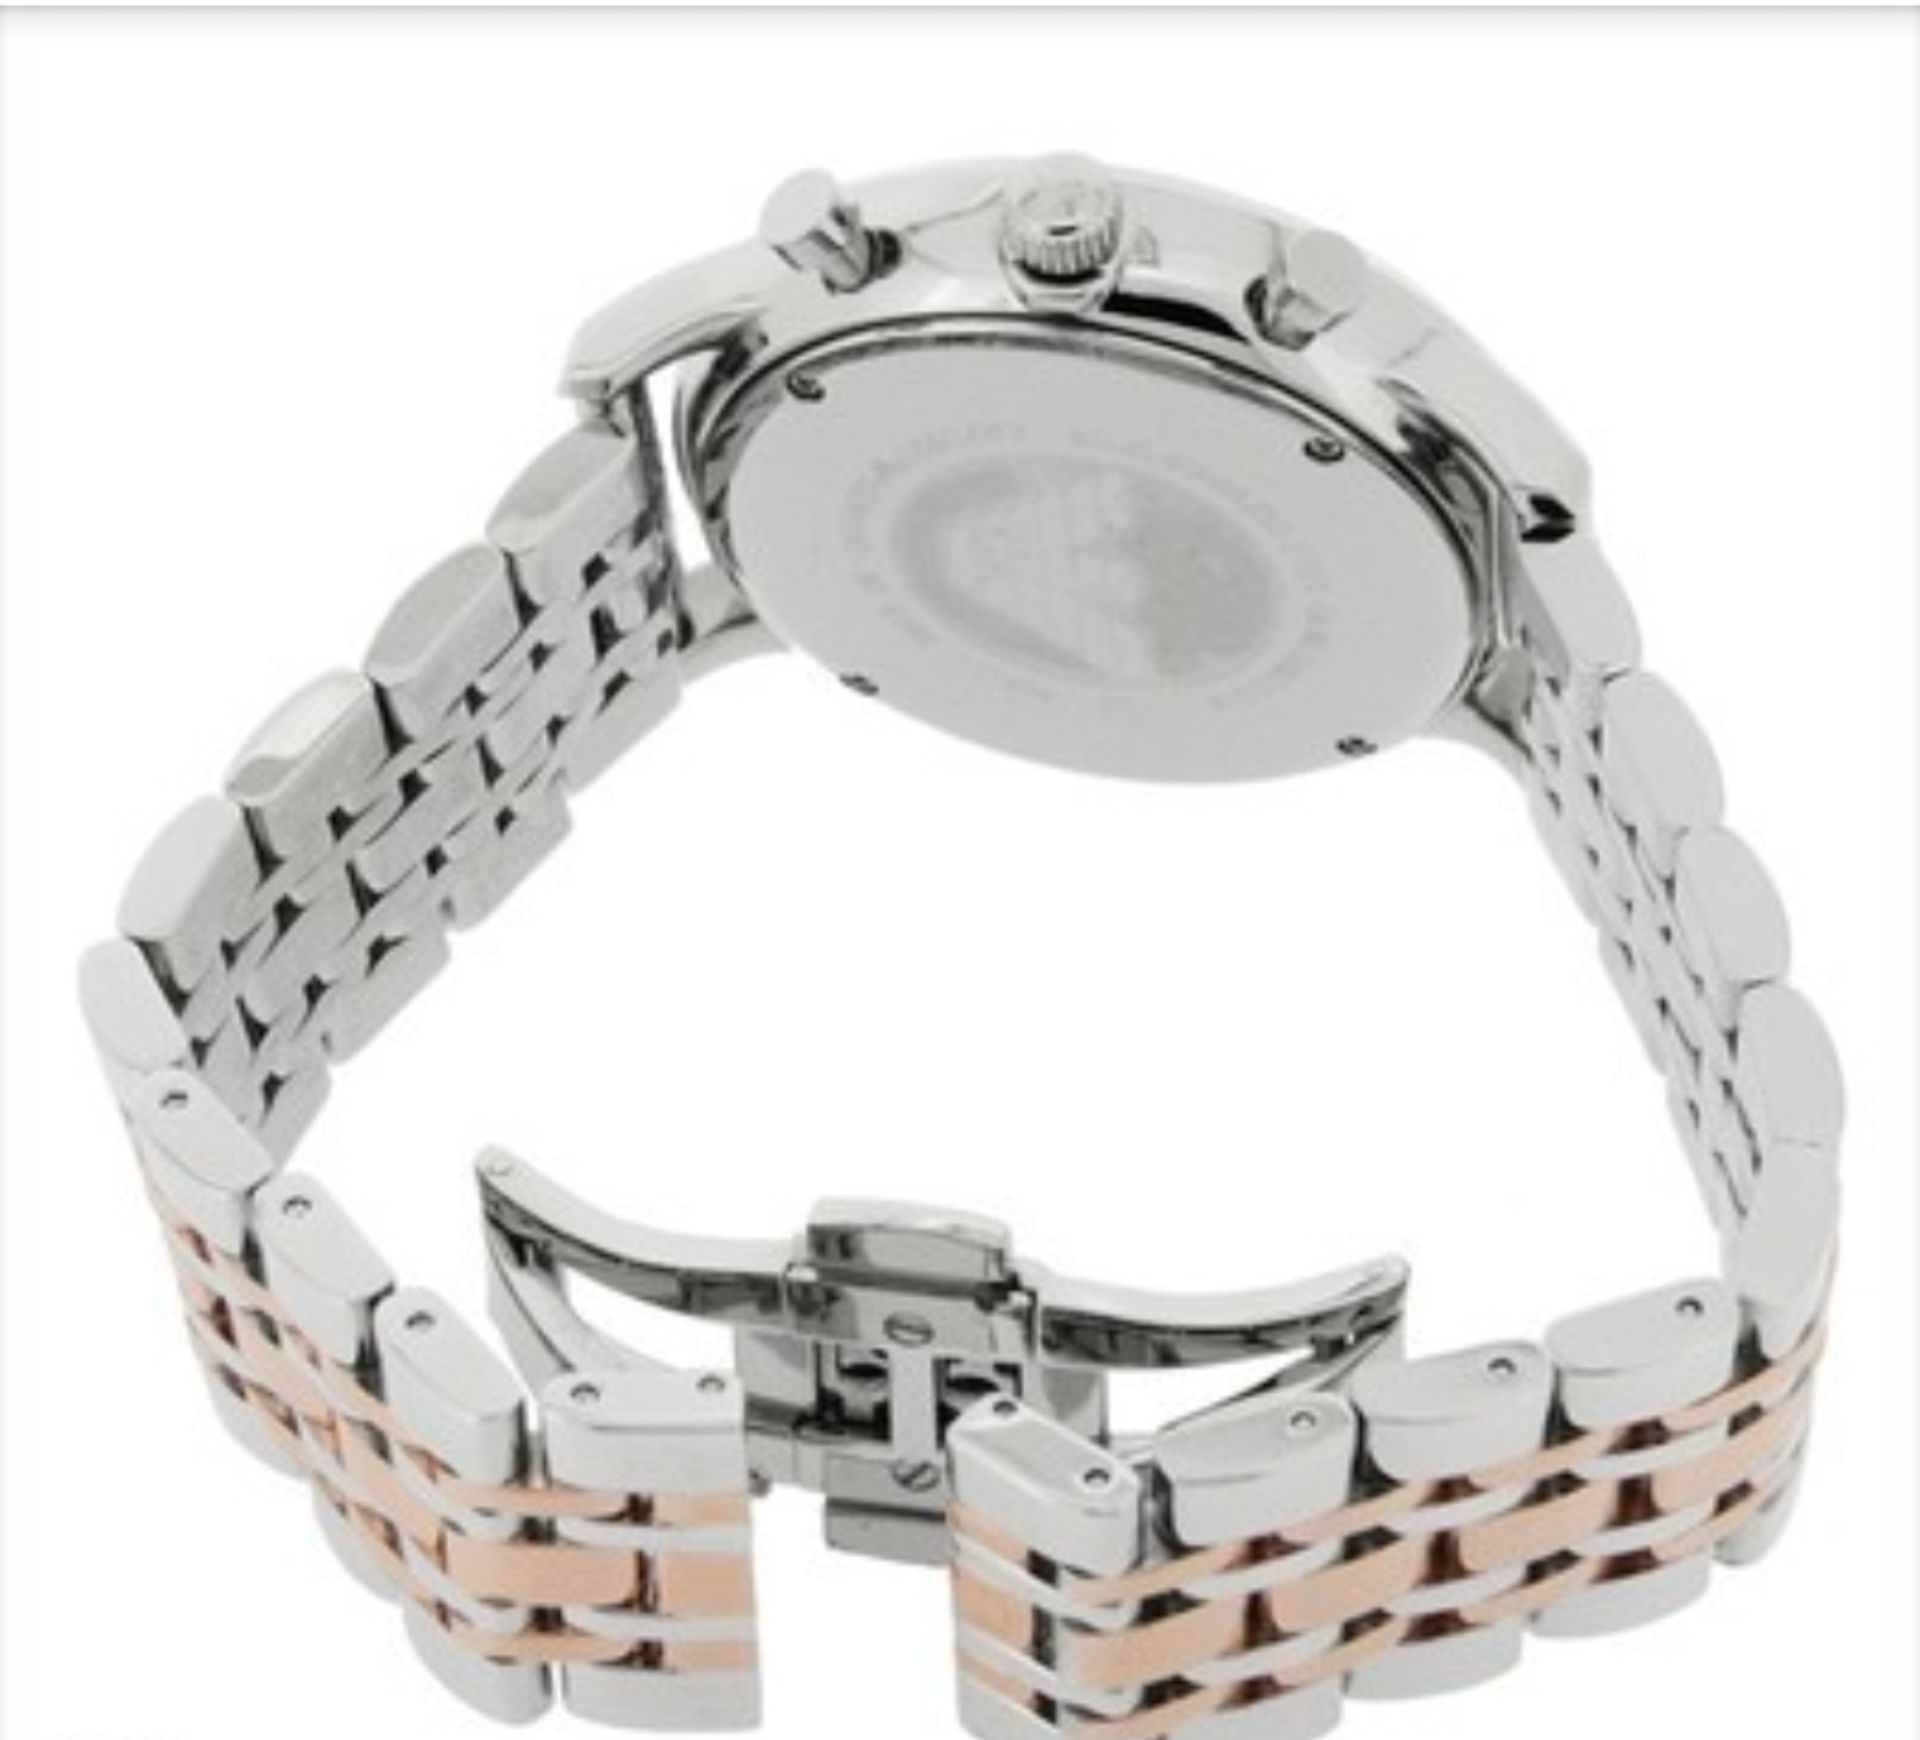 Emporio Armani Ar0399 Men's Gianni Stainless Steel Bracelet Chronograph Watch     Emporio Armani - Image 4 of 4